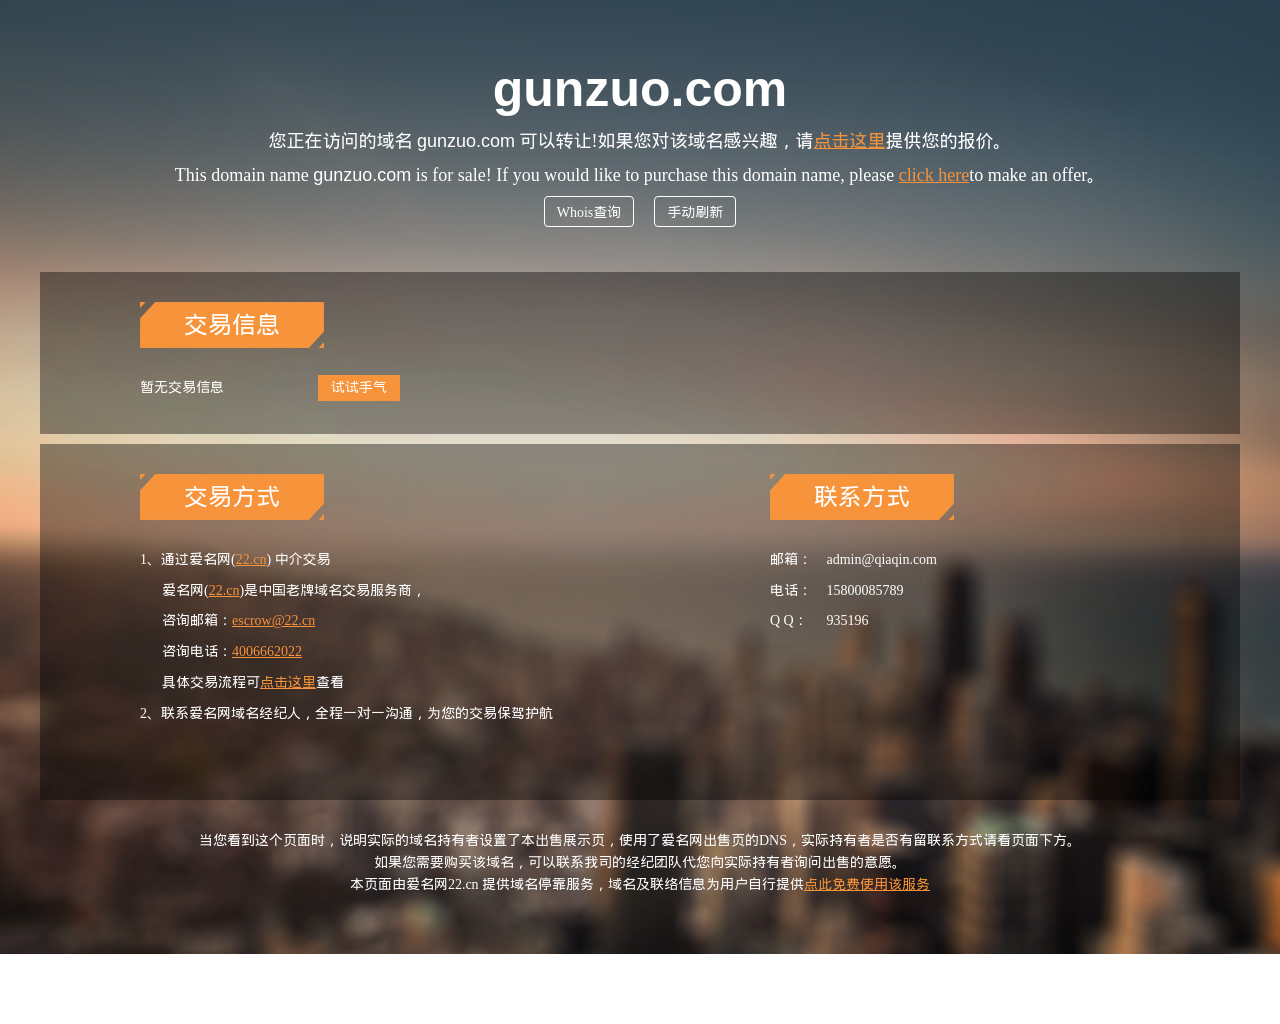 gunzuo.com